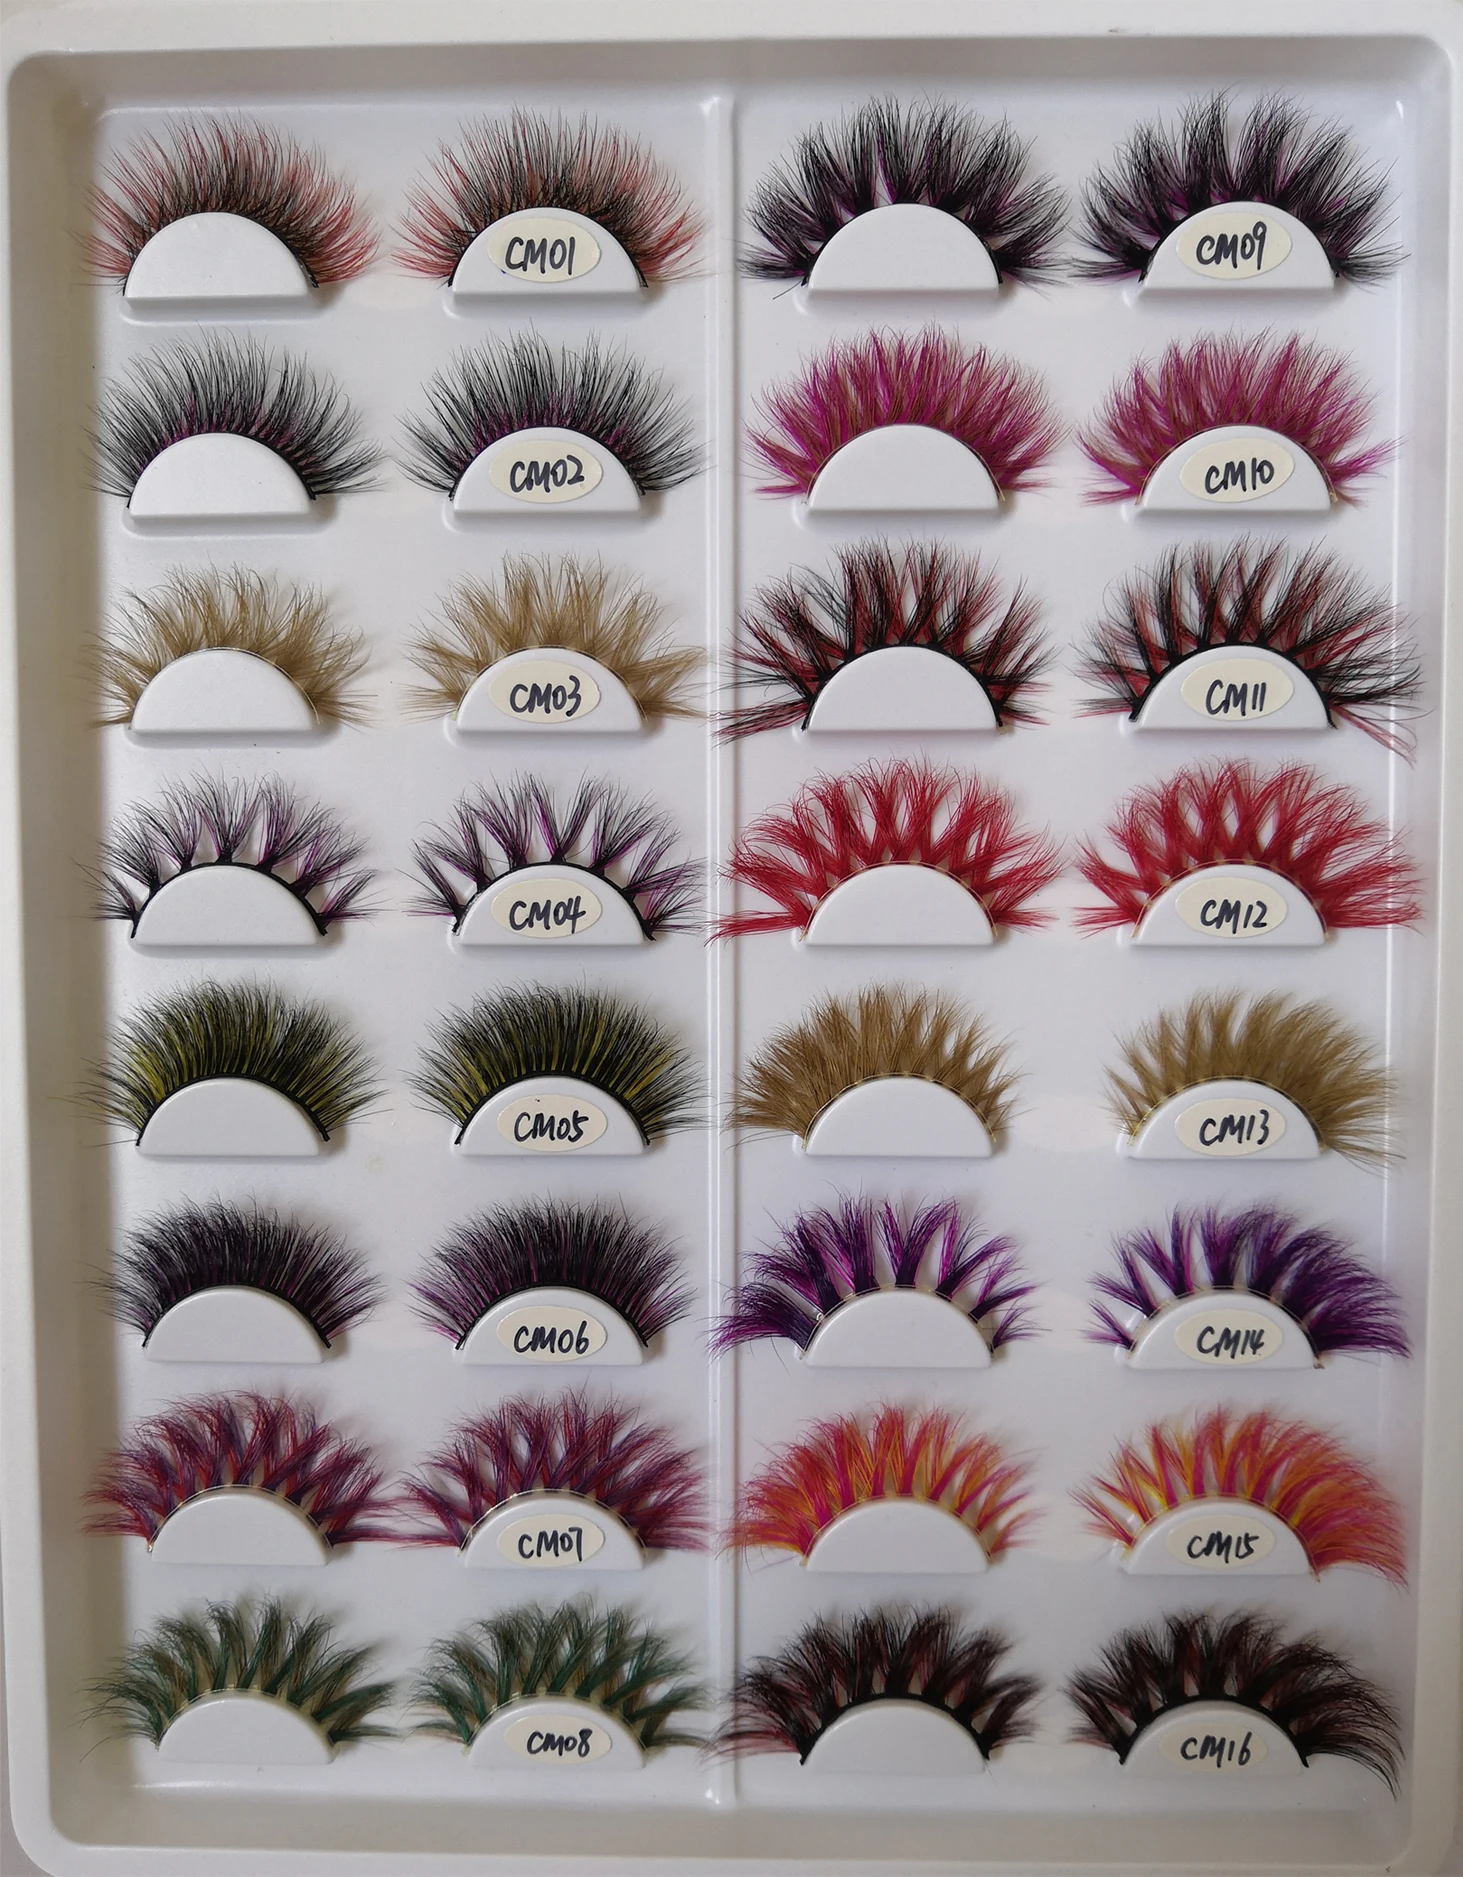 50 пар цветов 3D норковые ресницы оптом натуральные длинные отдельные толстые пушистые макияж красочные ресницы для наращивания ресниц поставки